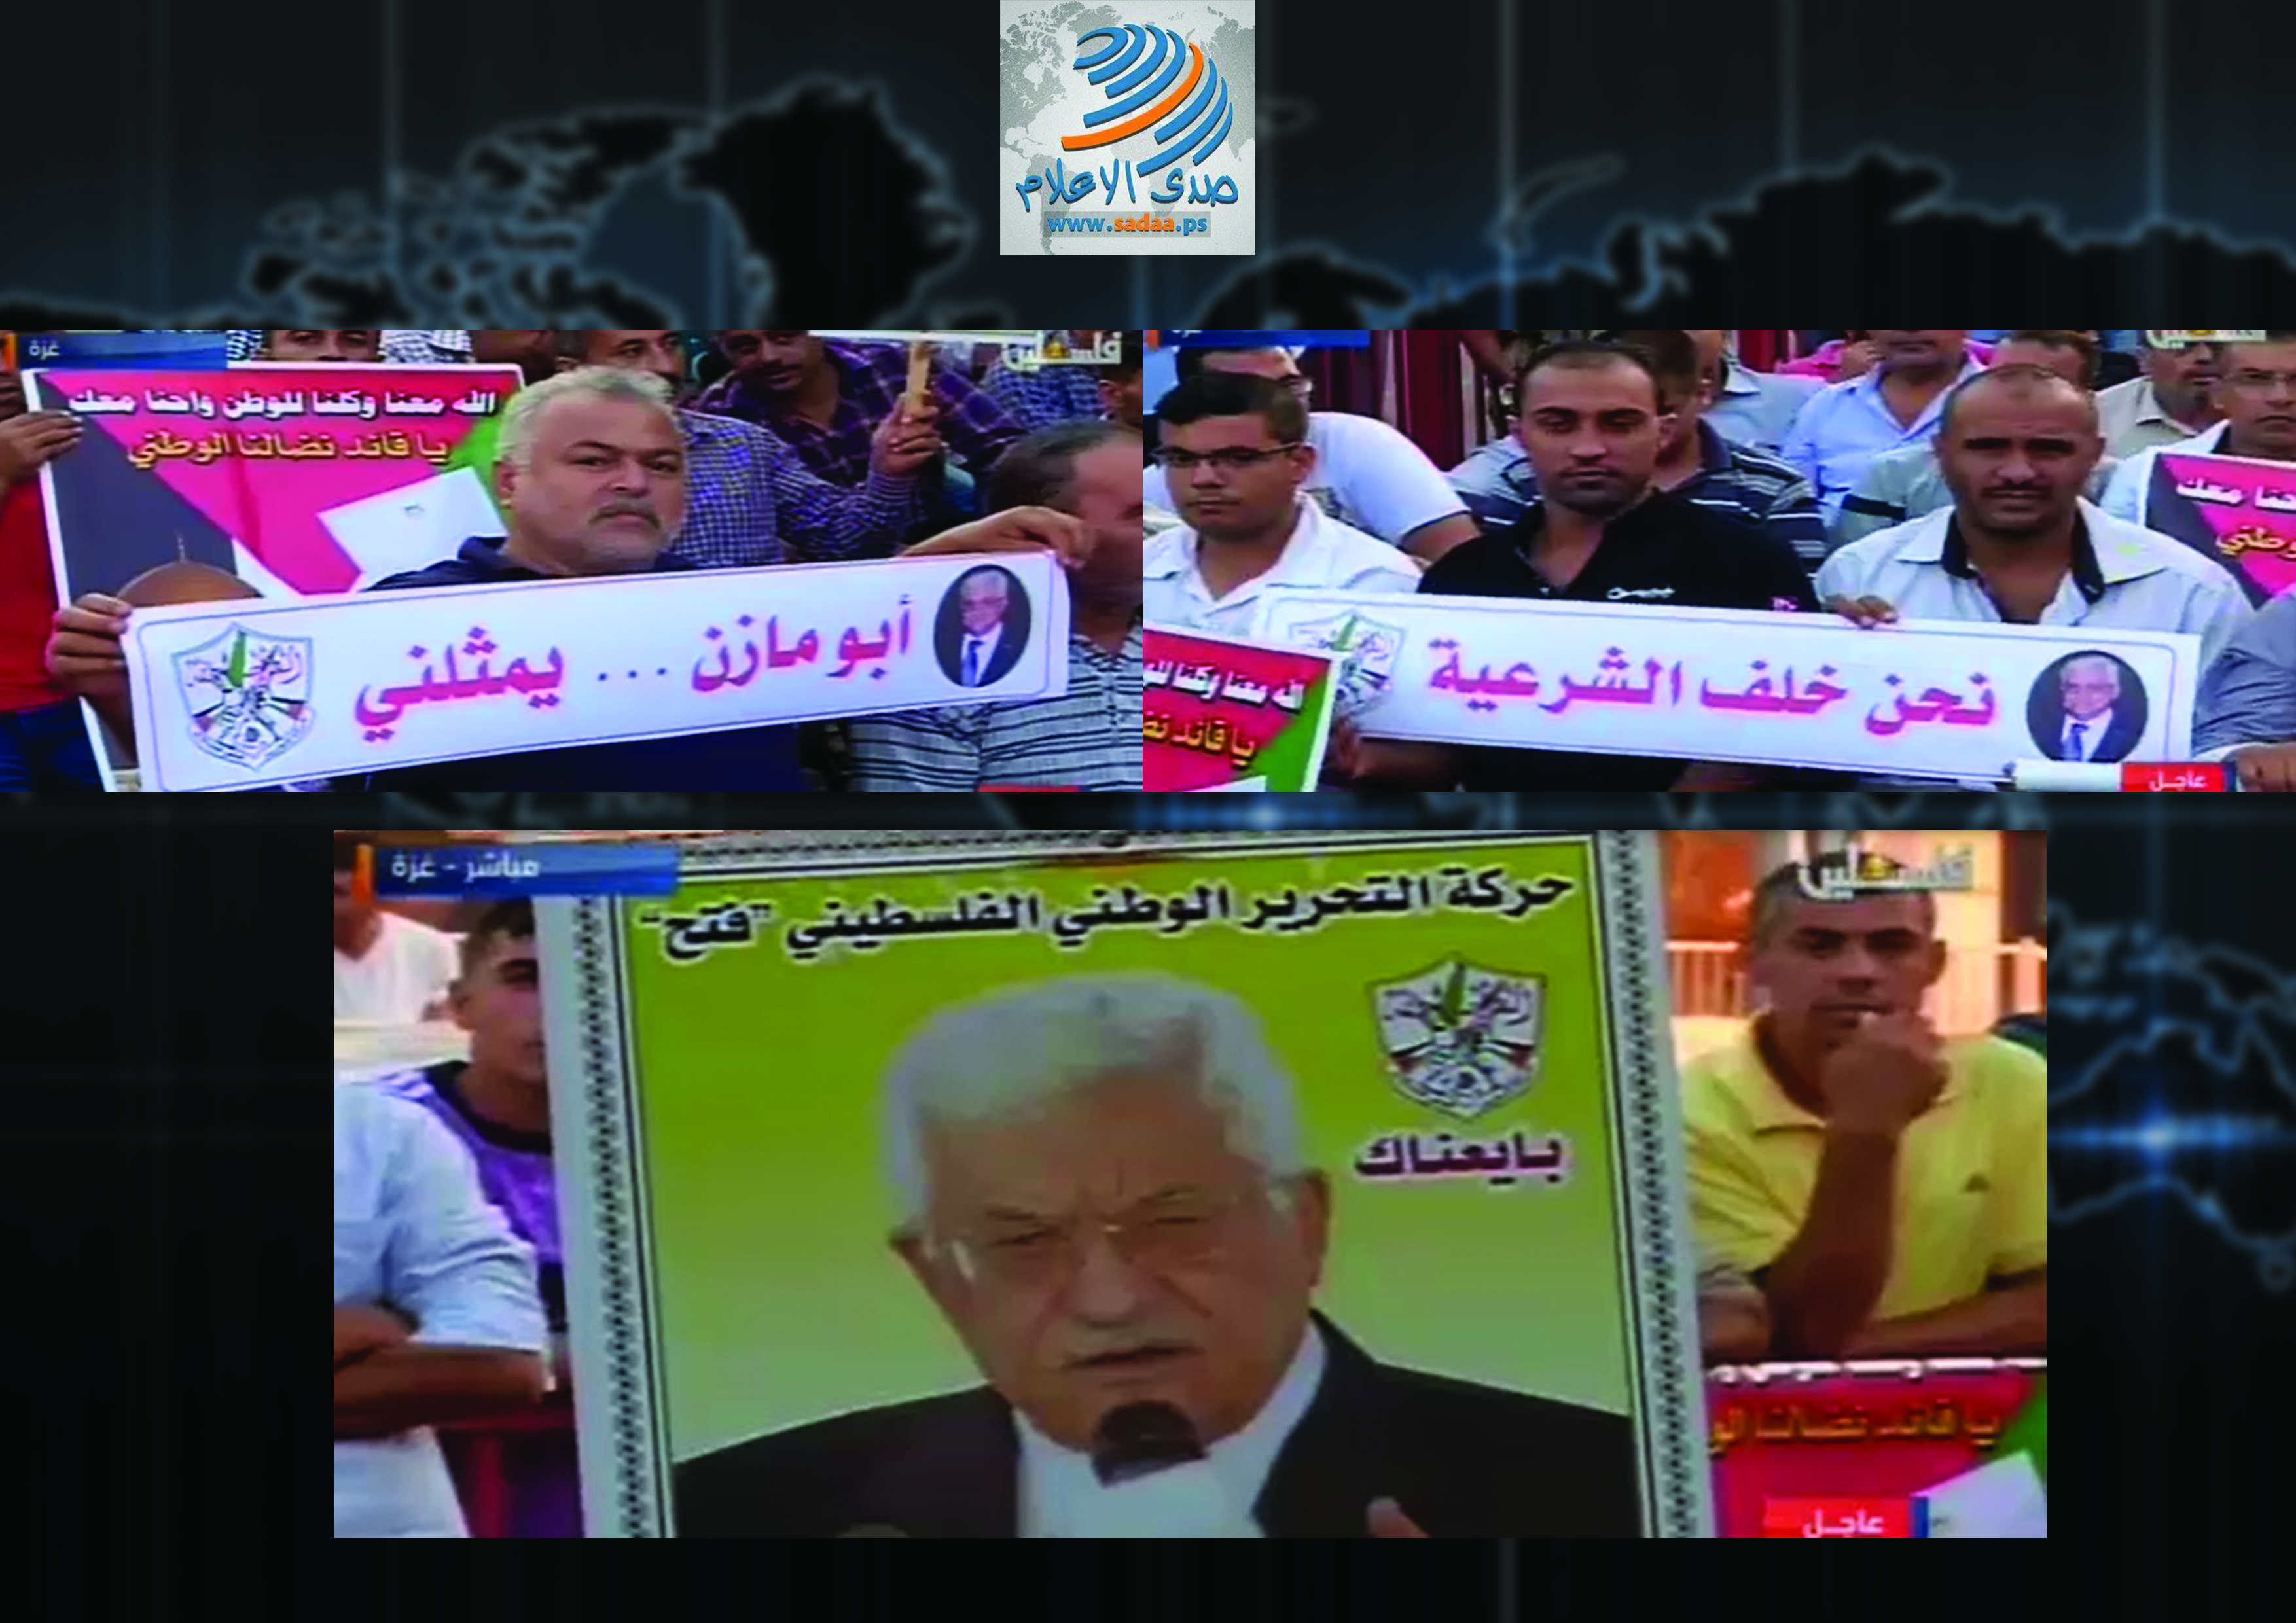 جماهير شعبنا في غزة تتابع خطاب الرئيس في الساحات العامة